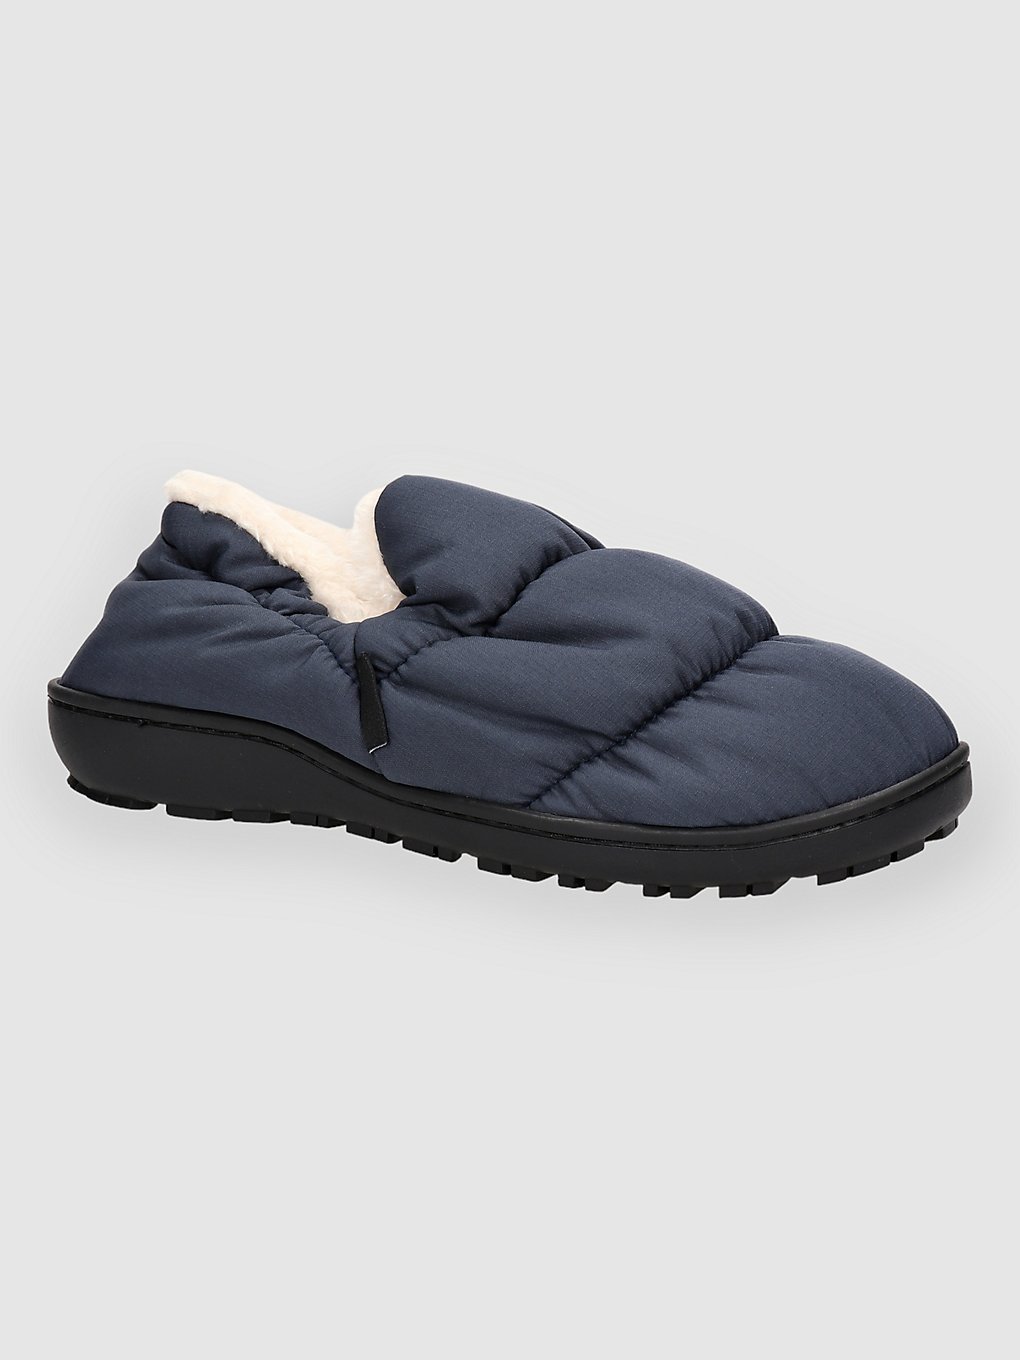 Voited Cloudtouch slippersWinter Winter schoenen zwart